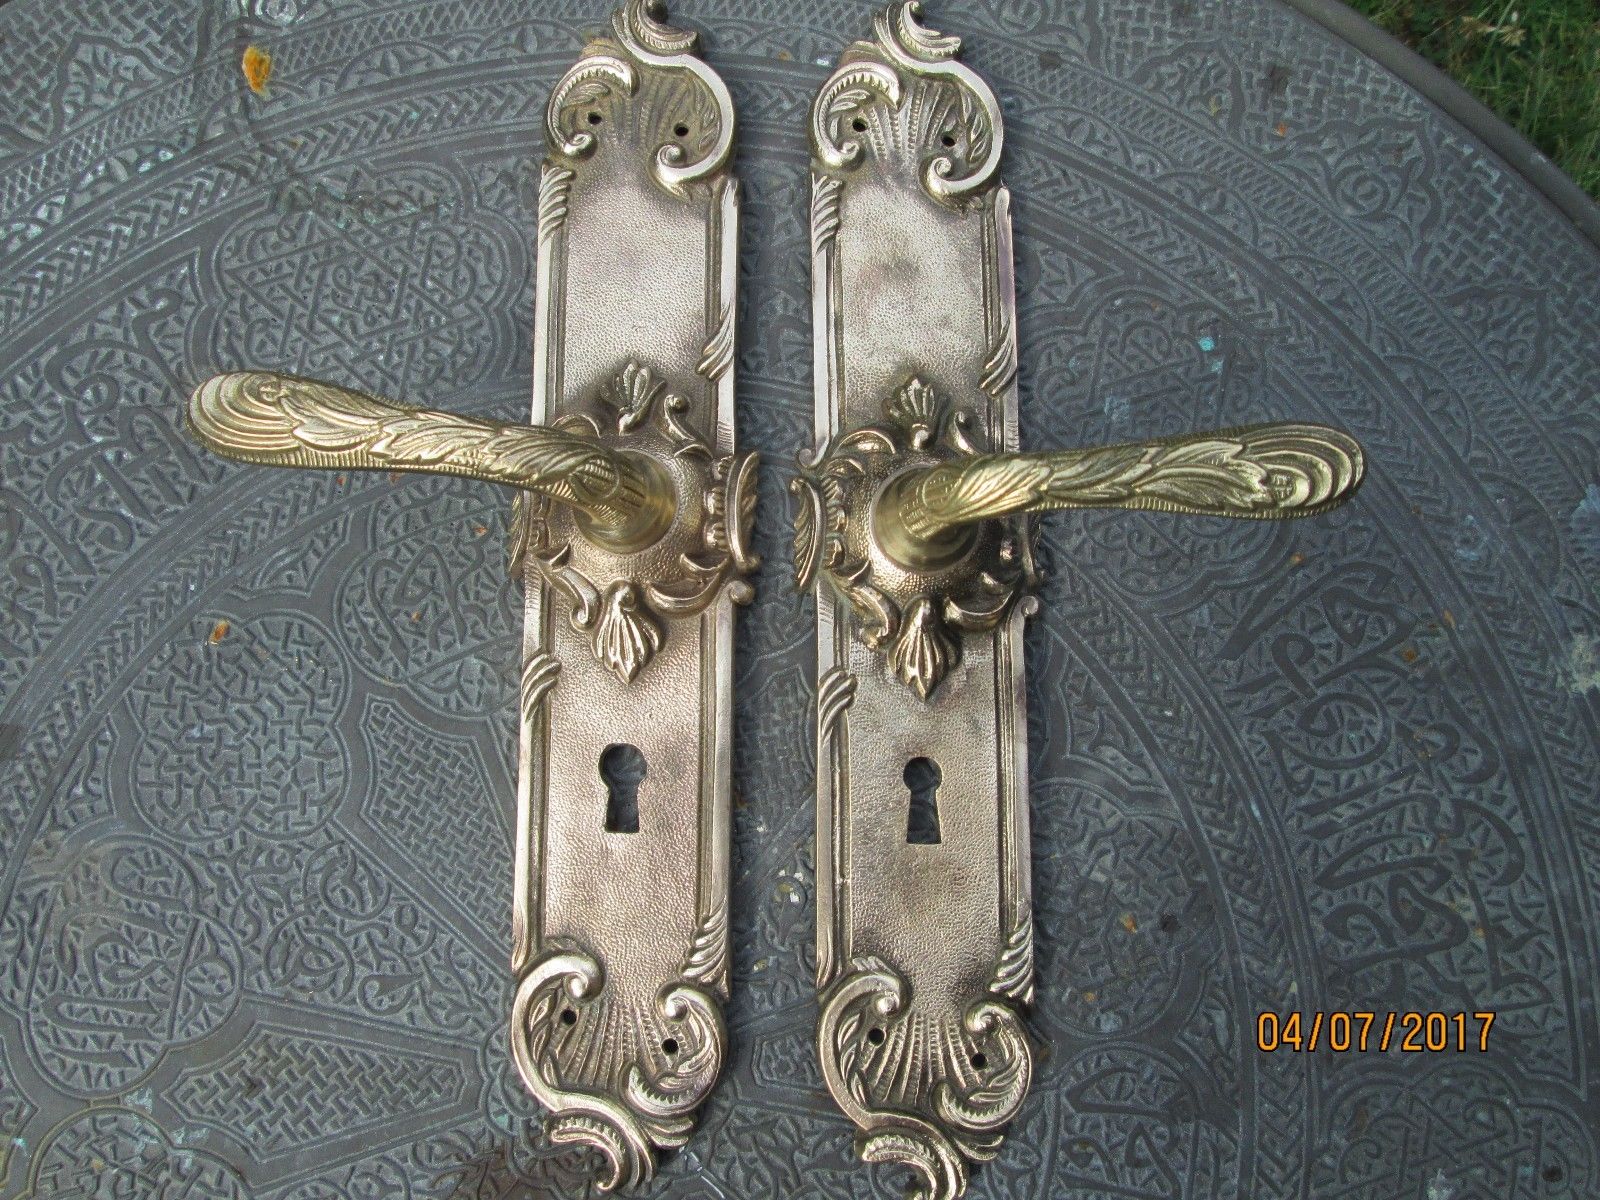 PAIR OF ANTIQUE FRENCH ORMOLU DOOR HANDLES  BRASS DOOR HANDLES ART NOUVEAU